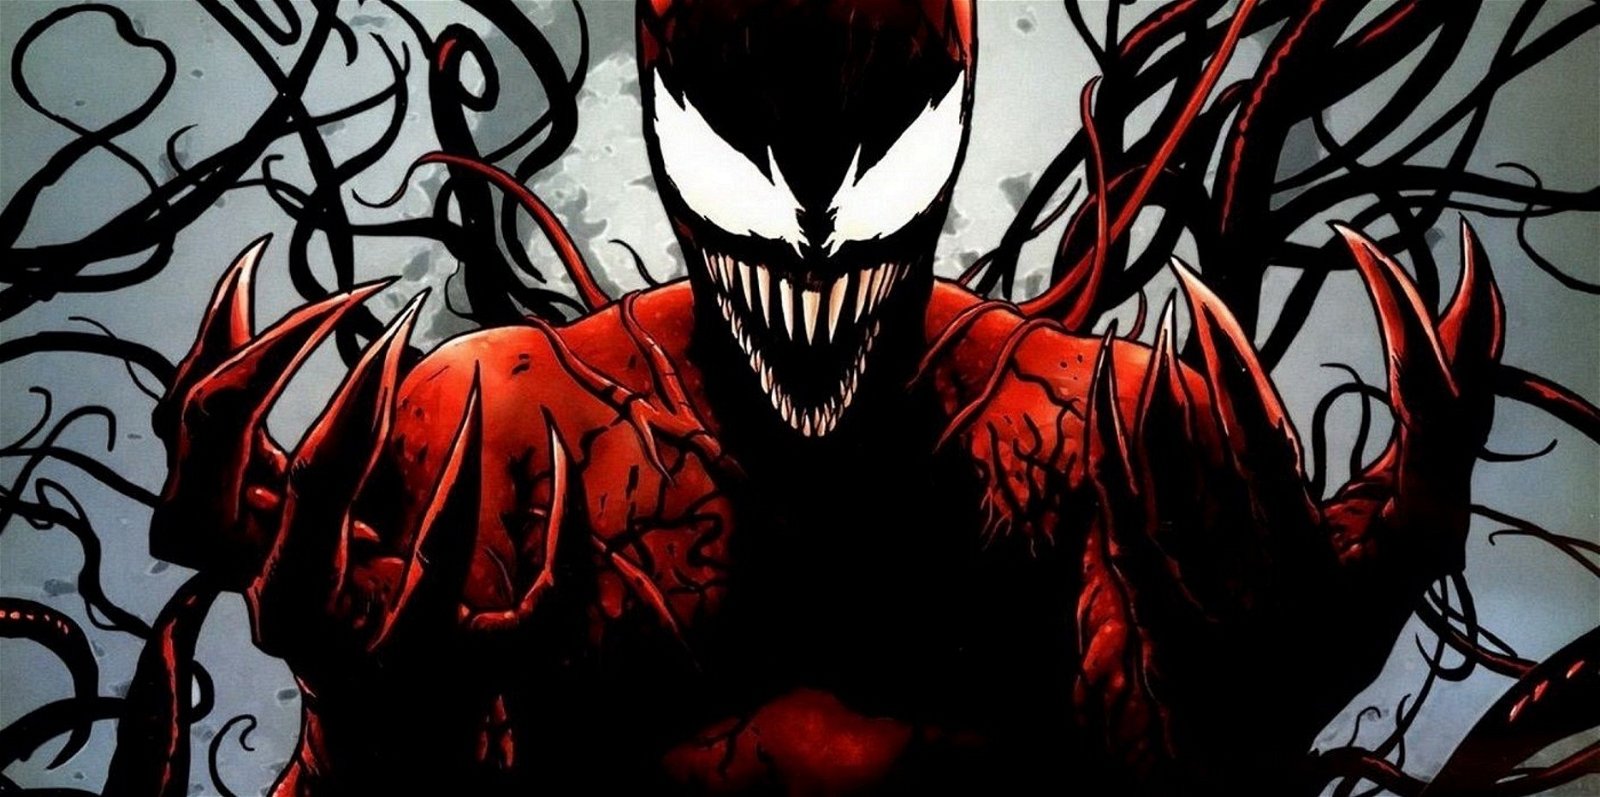 Spiderman: Los 15 villanos más poderosos a los que se ha enfrentado